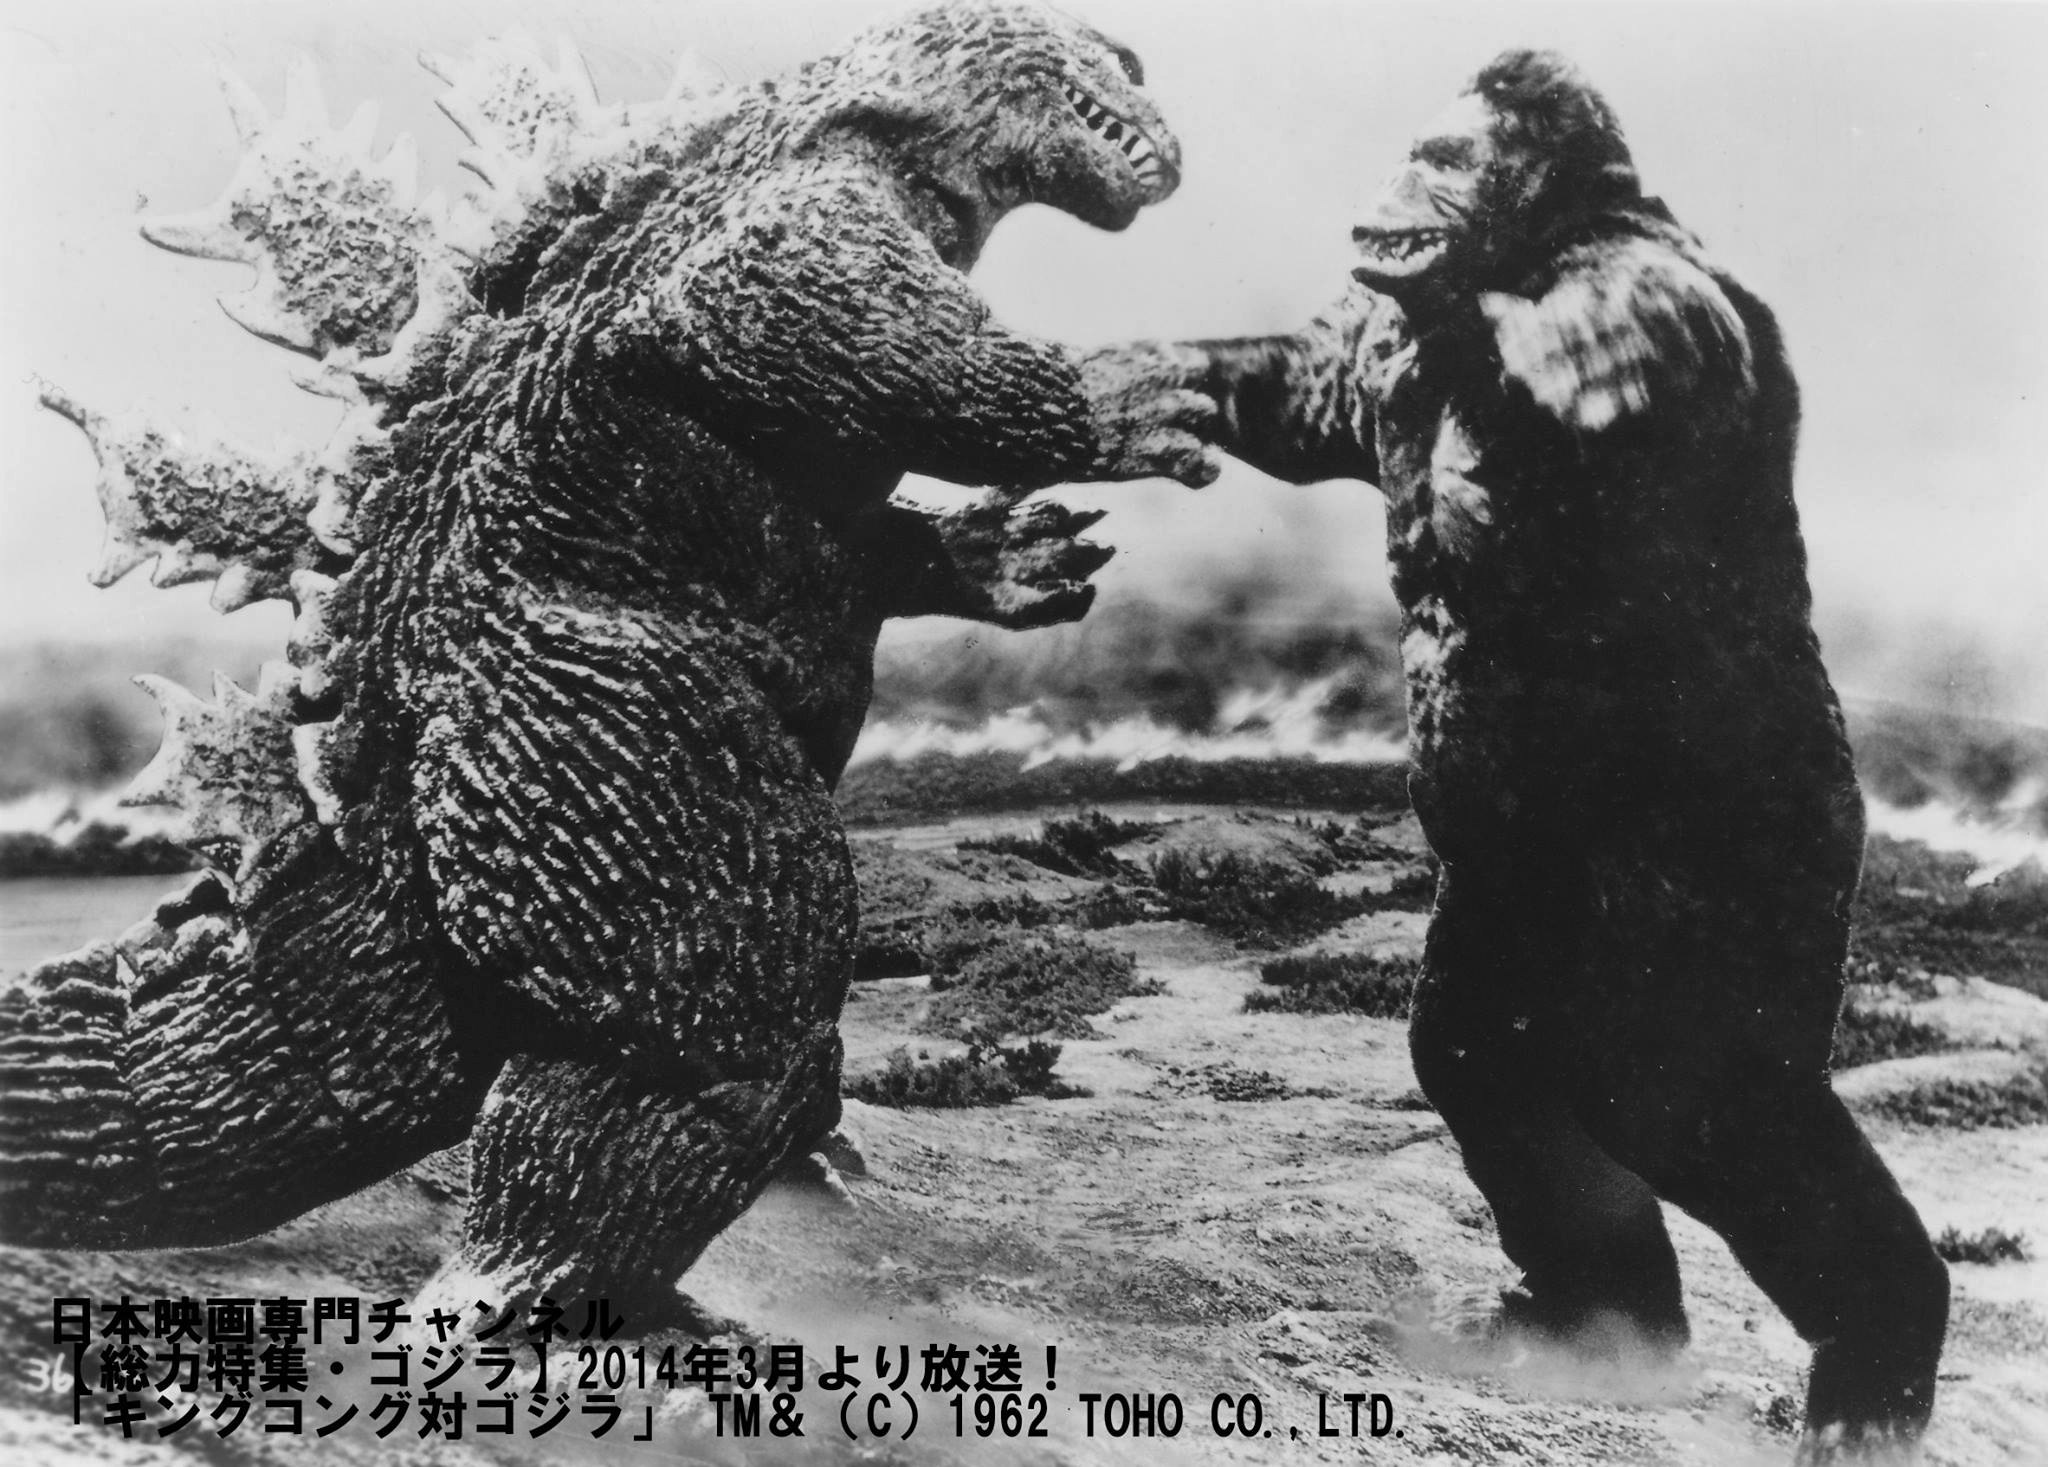 King Kong Vs. Godzilla HD Wallpaper | Background Image | 2048x1467 | ID